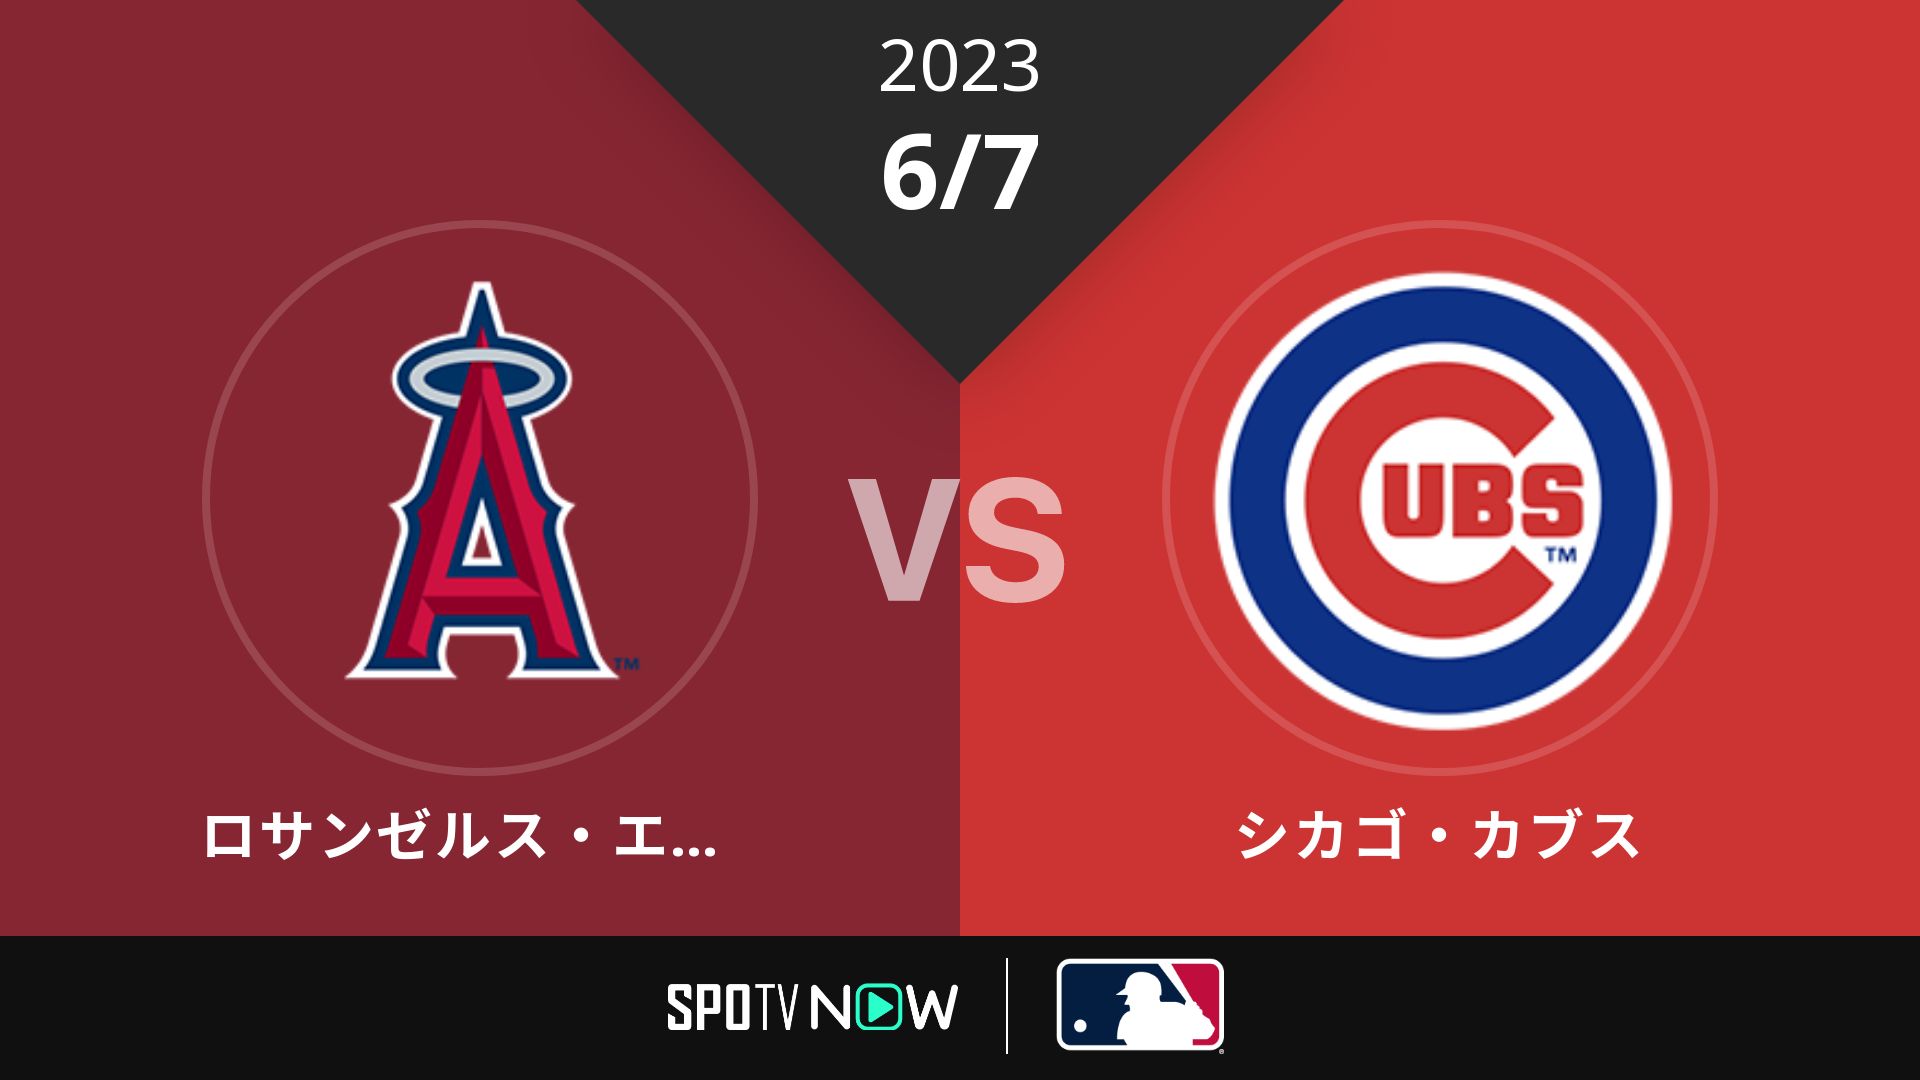 2023/6/7 エンゼルス vs カブス [MLB]